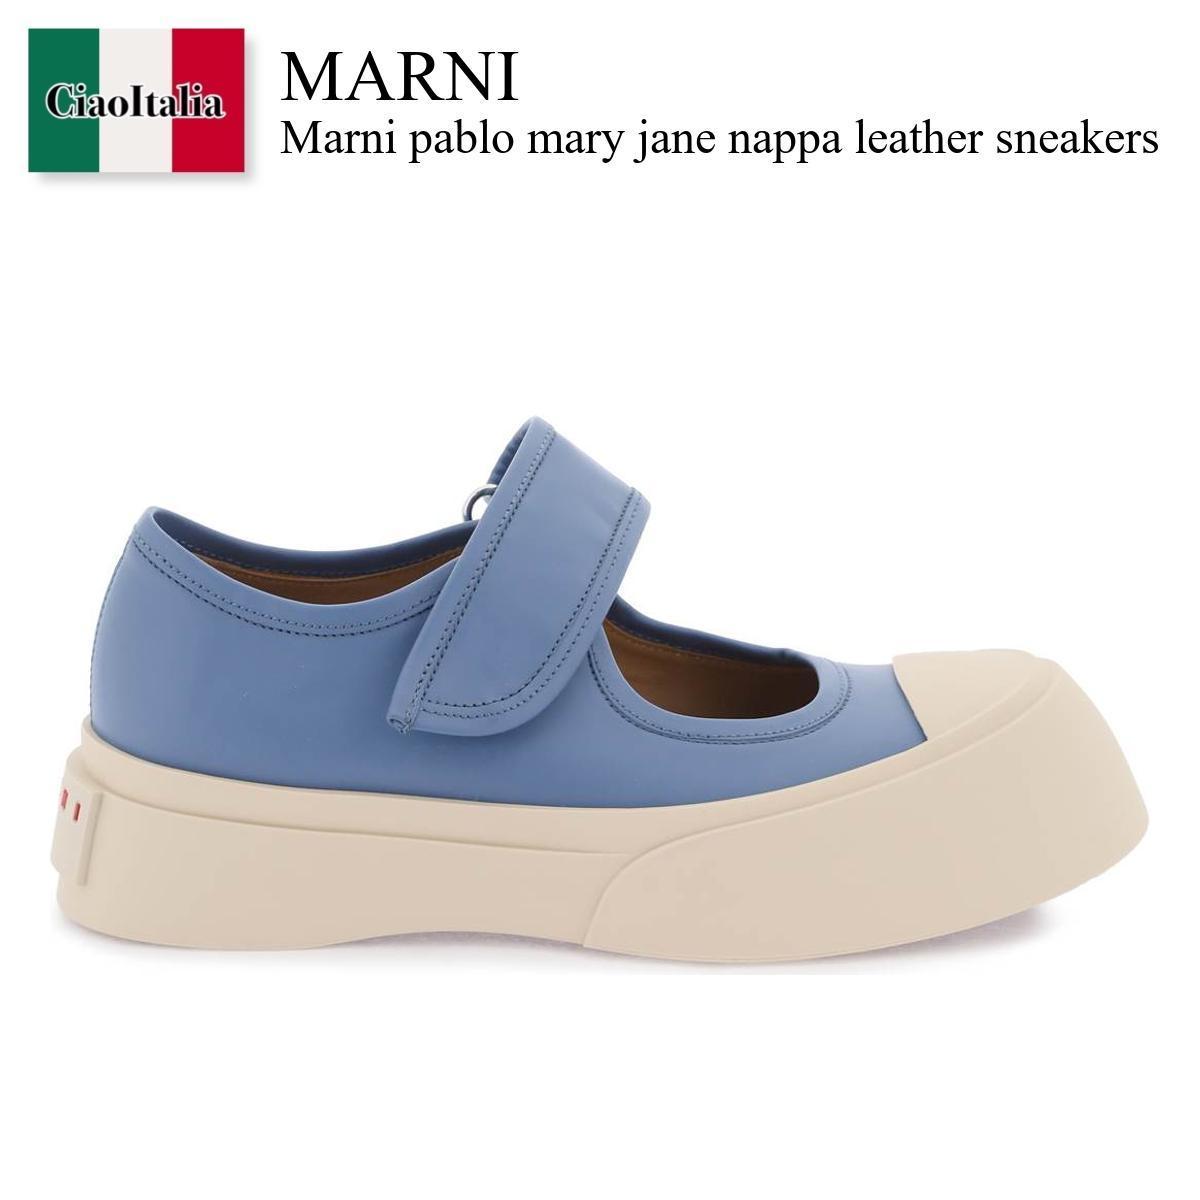 マルニ / Marni Pablo Mary Jane Nappa Leather 